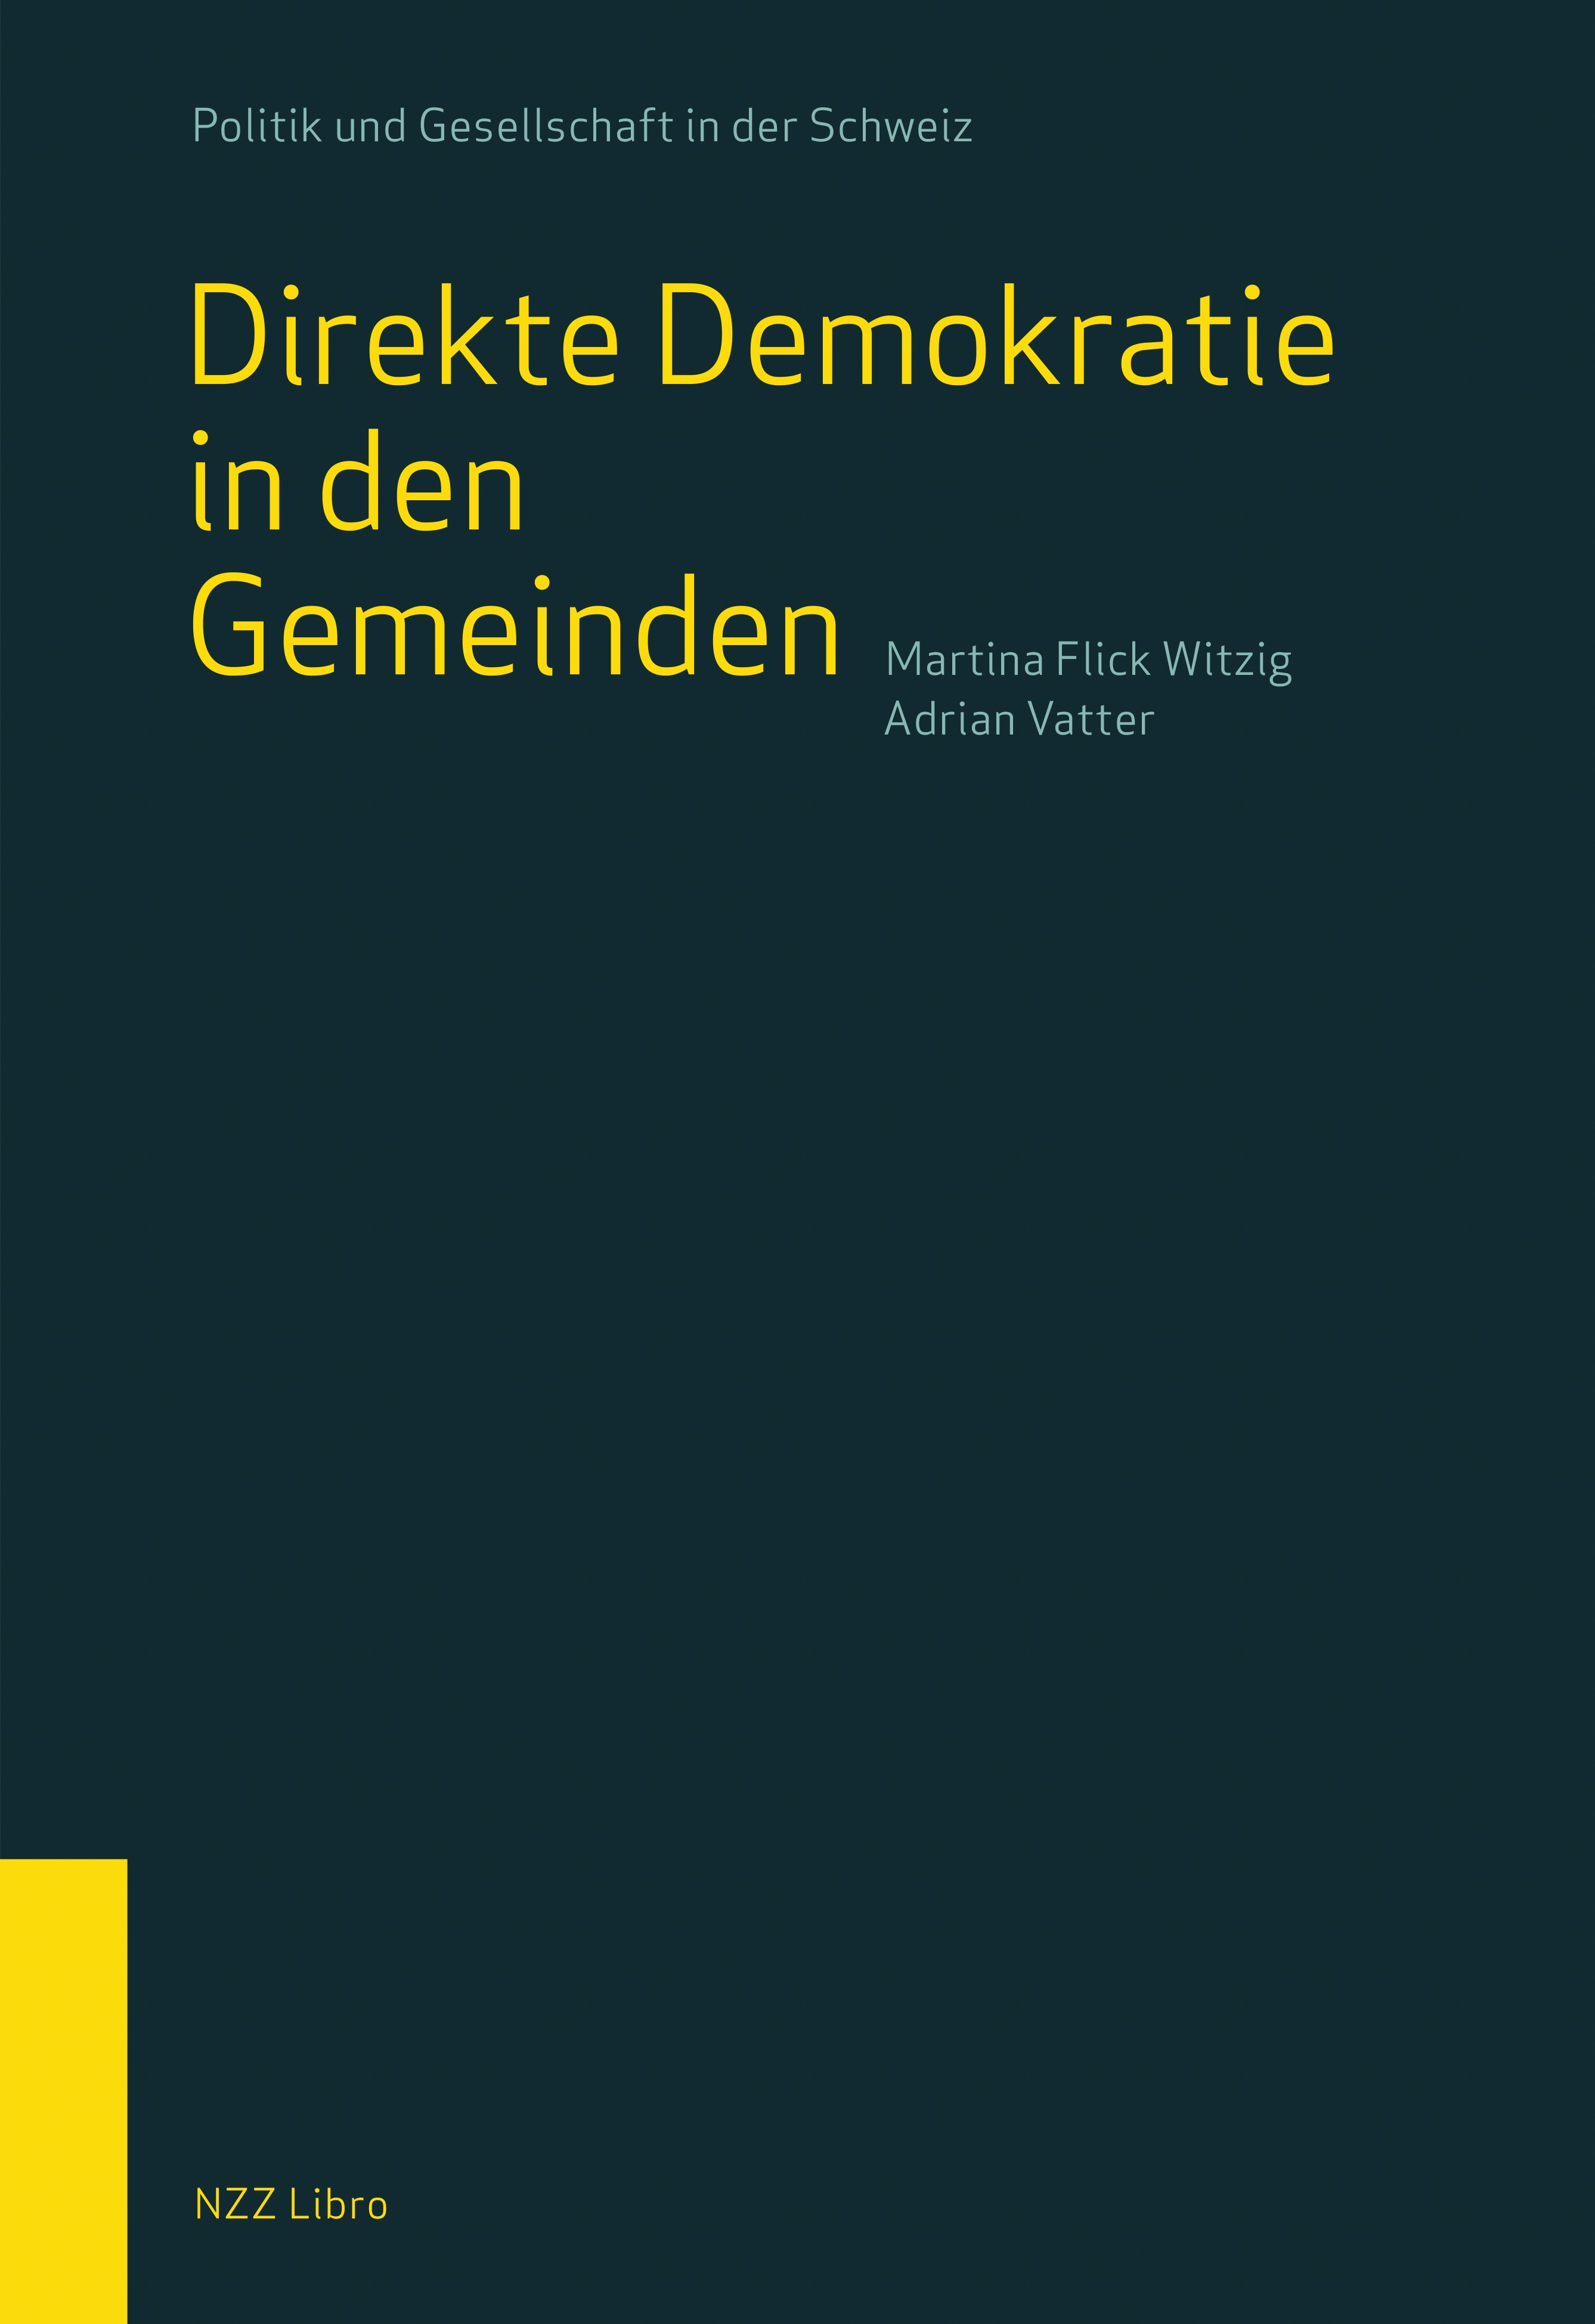 Buchcover «Direkte Demokratie in den Gemeinden», NZZ Libro Verlag. Bild: zvg